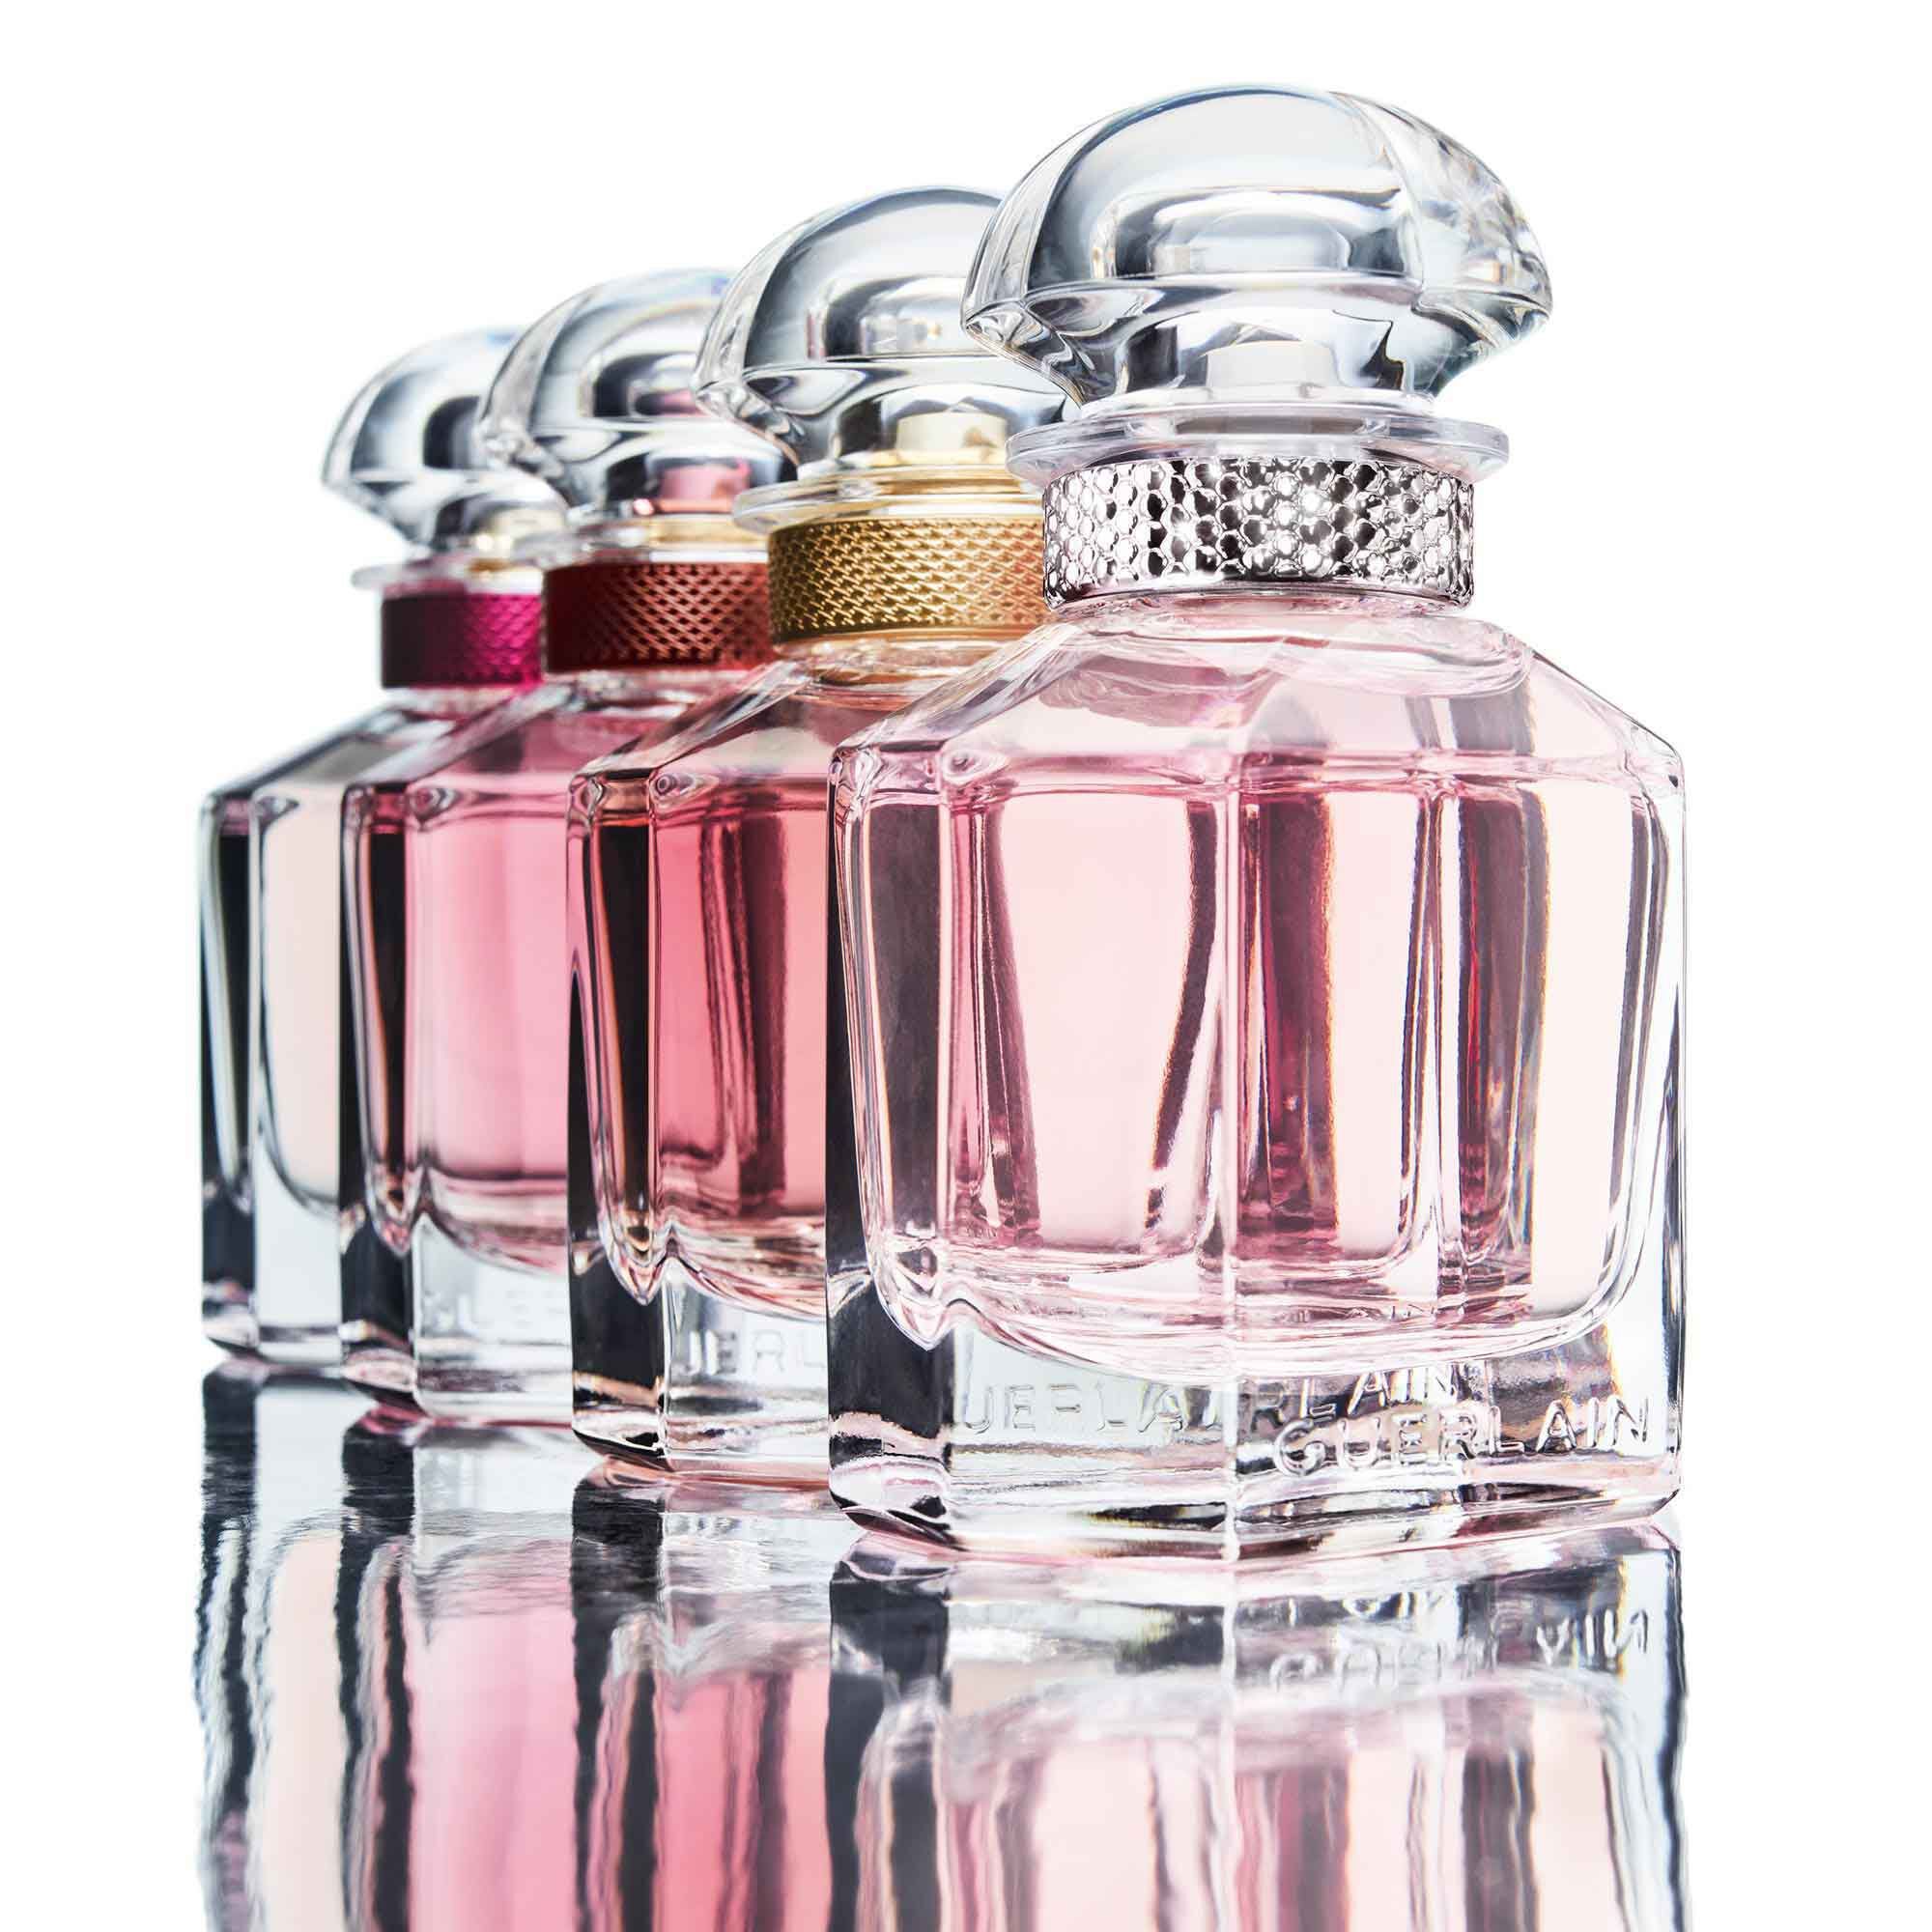 Guerlain Parfum - Homecare24